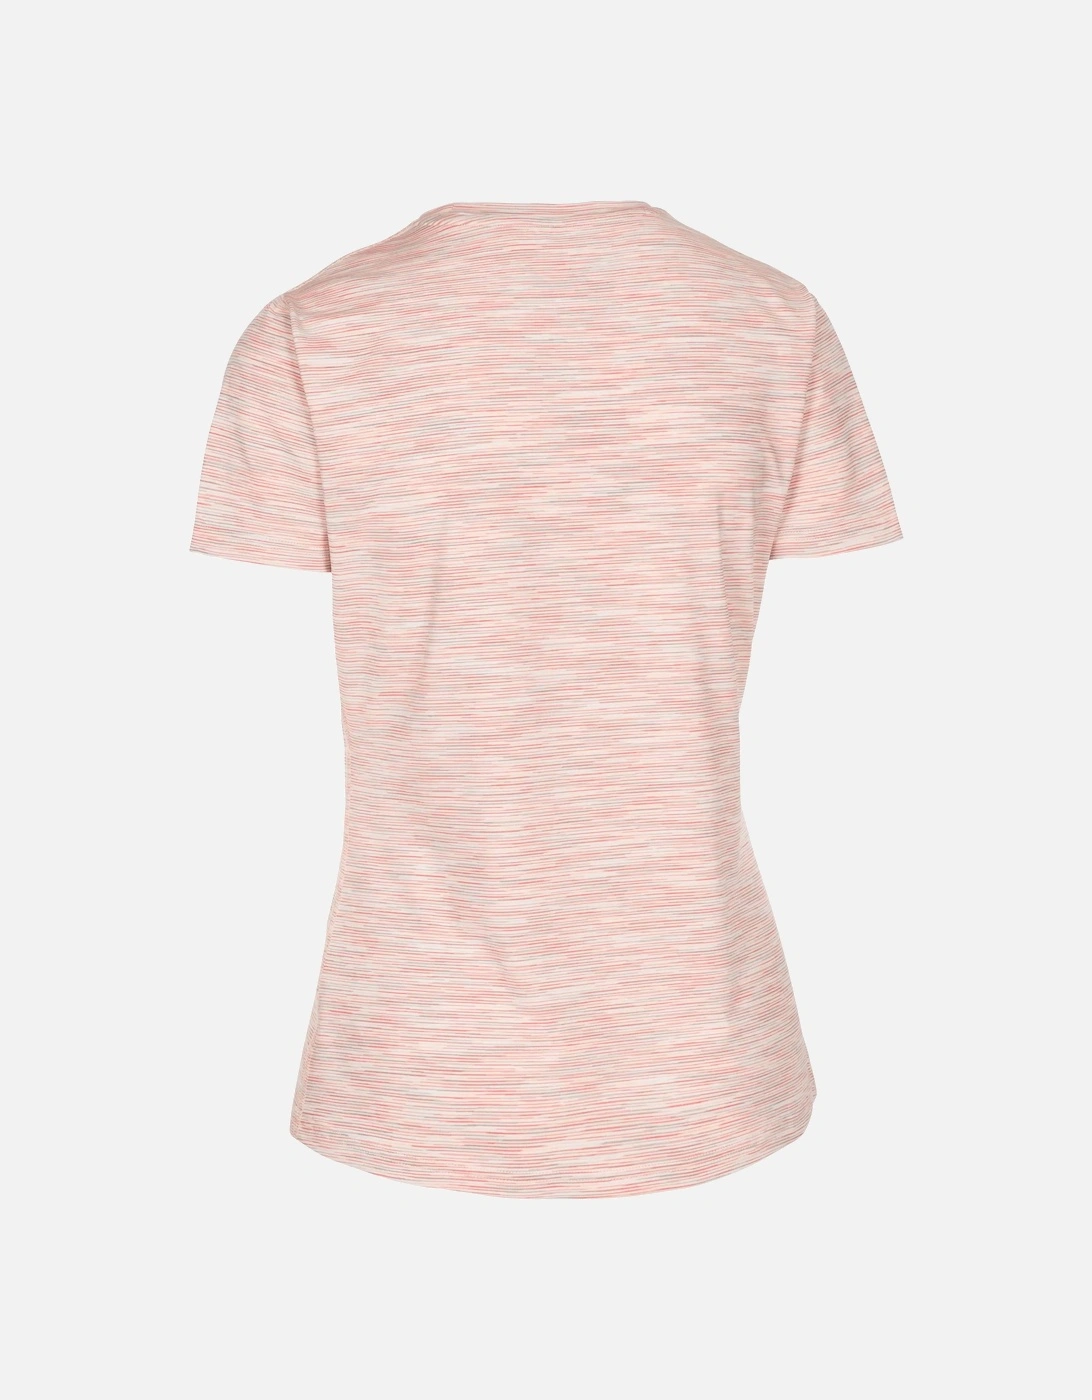 Womens/Ladies Hokku Striped T-Shirt